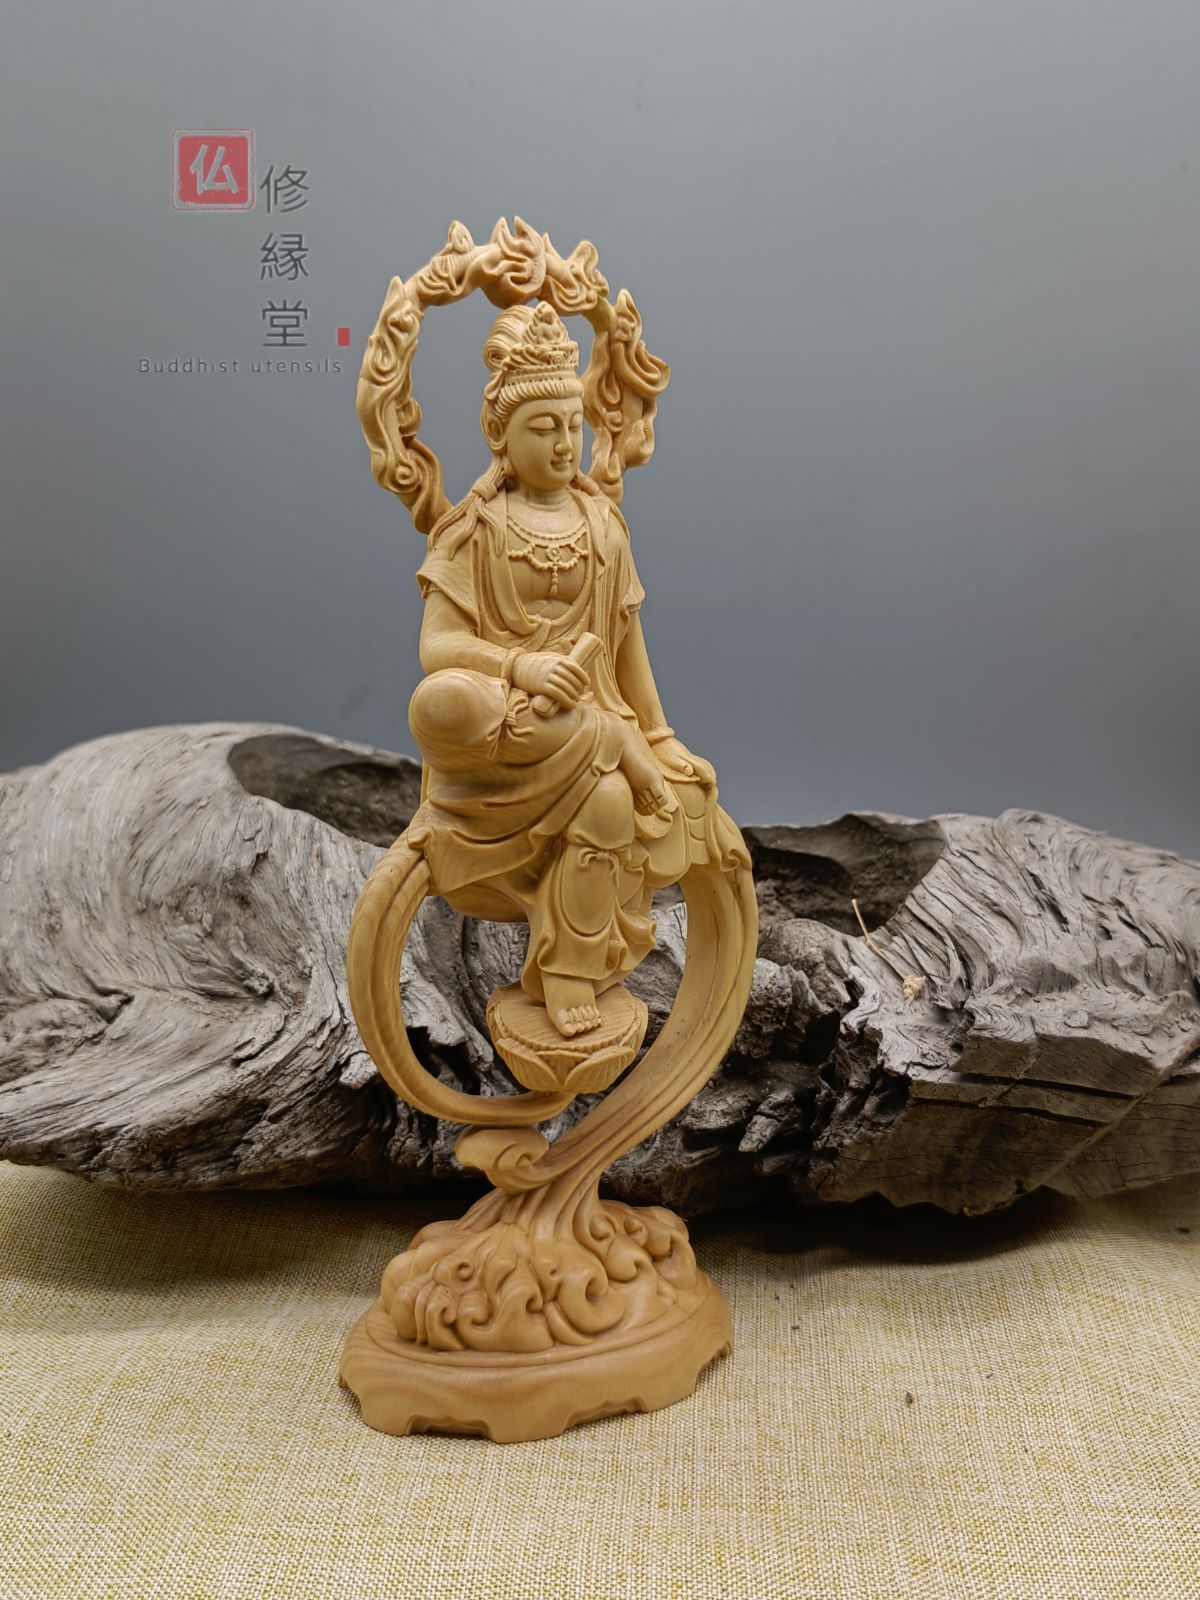 木彫り 仏像 水月自在観音菩薩立像 柘植材 仏教工芸 財前彫刻-